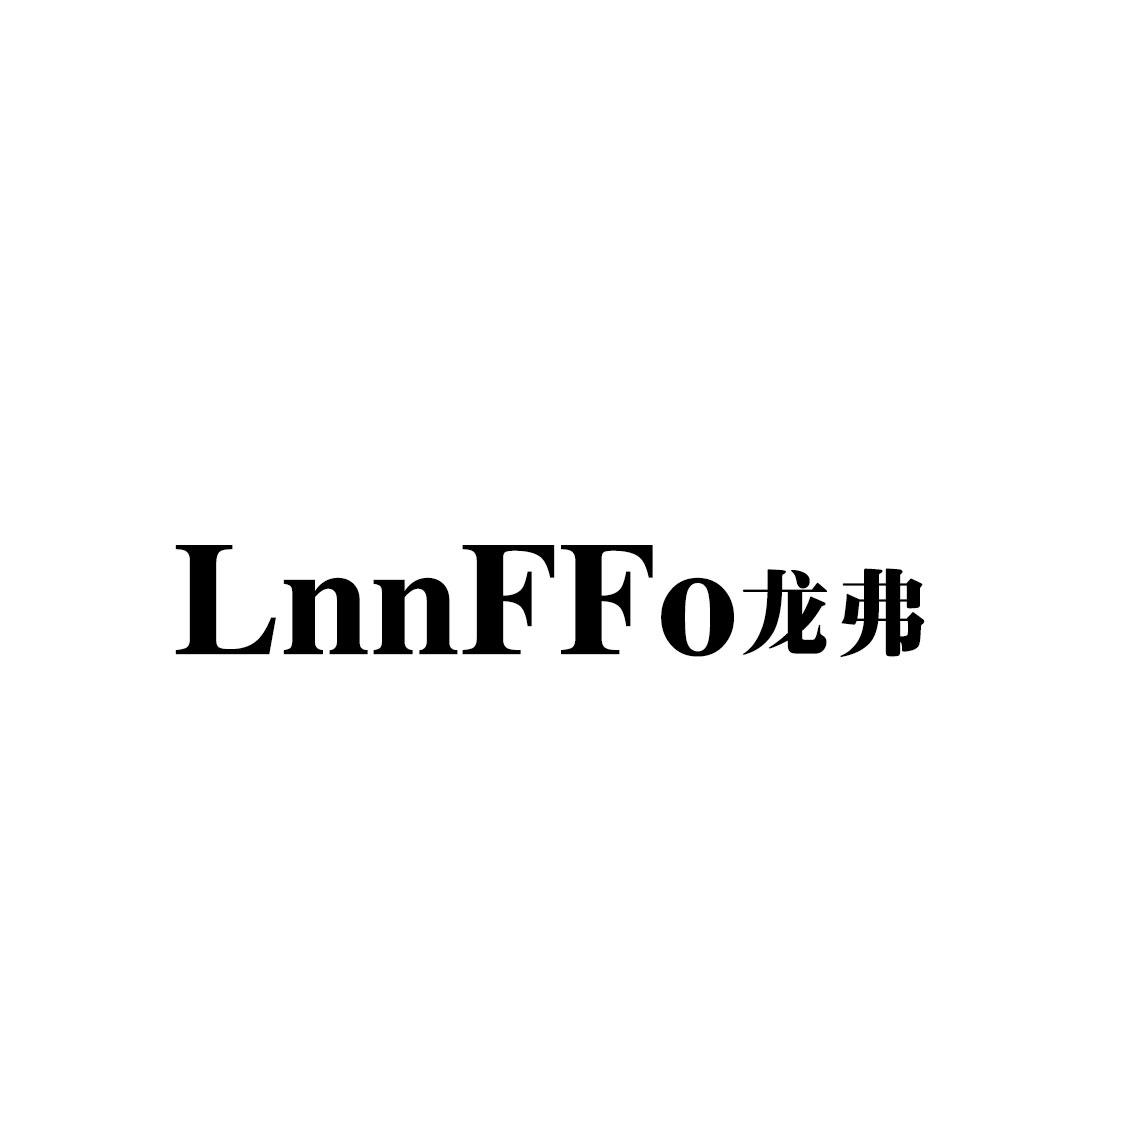 转让商标-LNNFFO龙弗